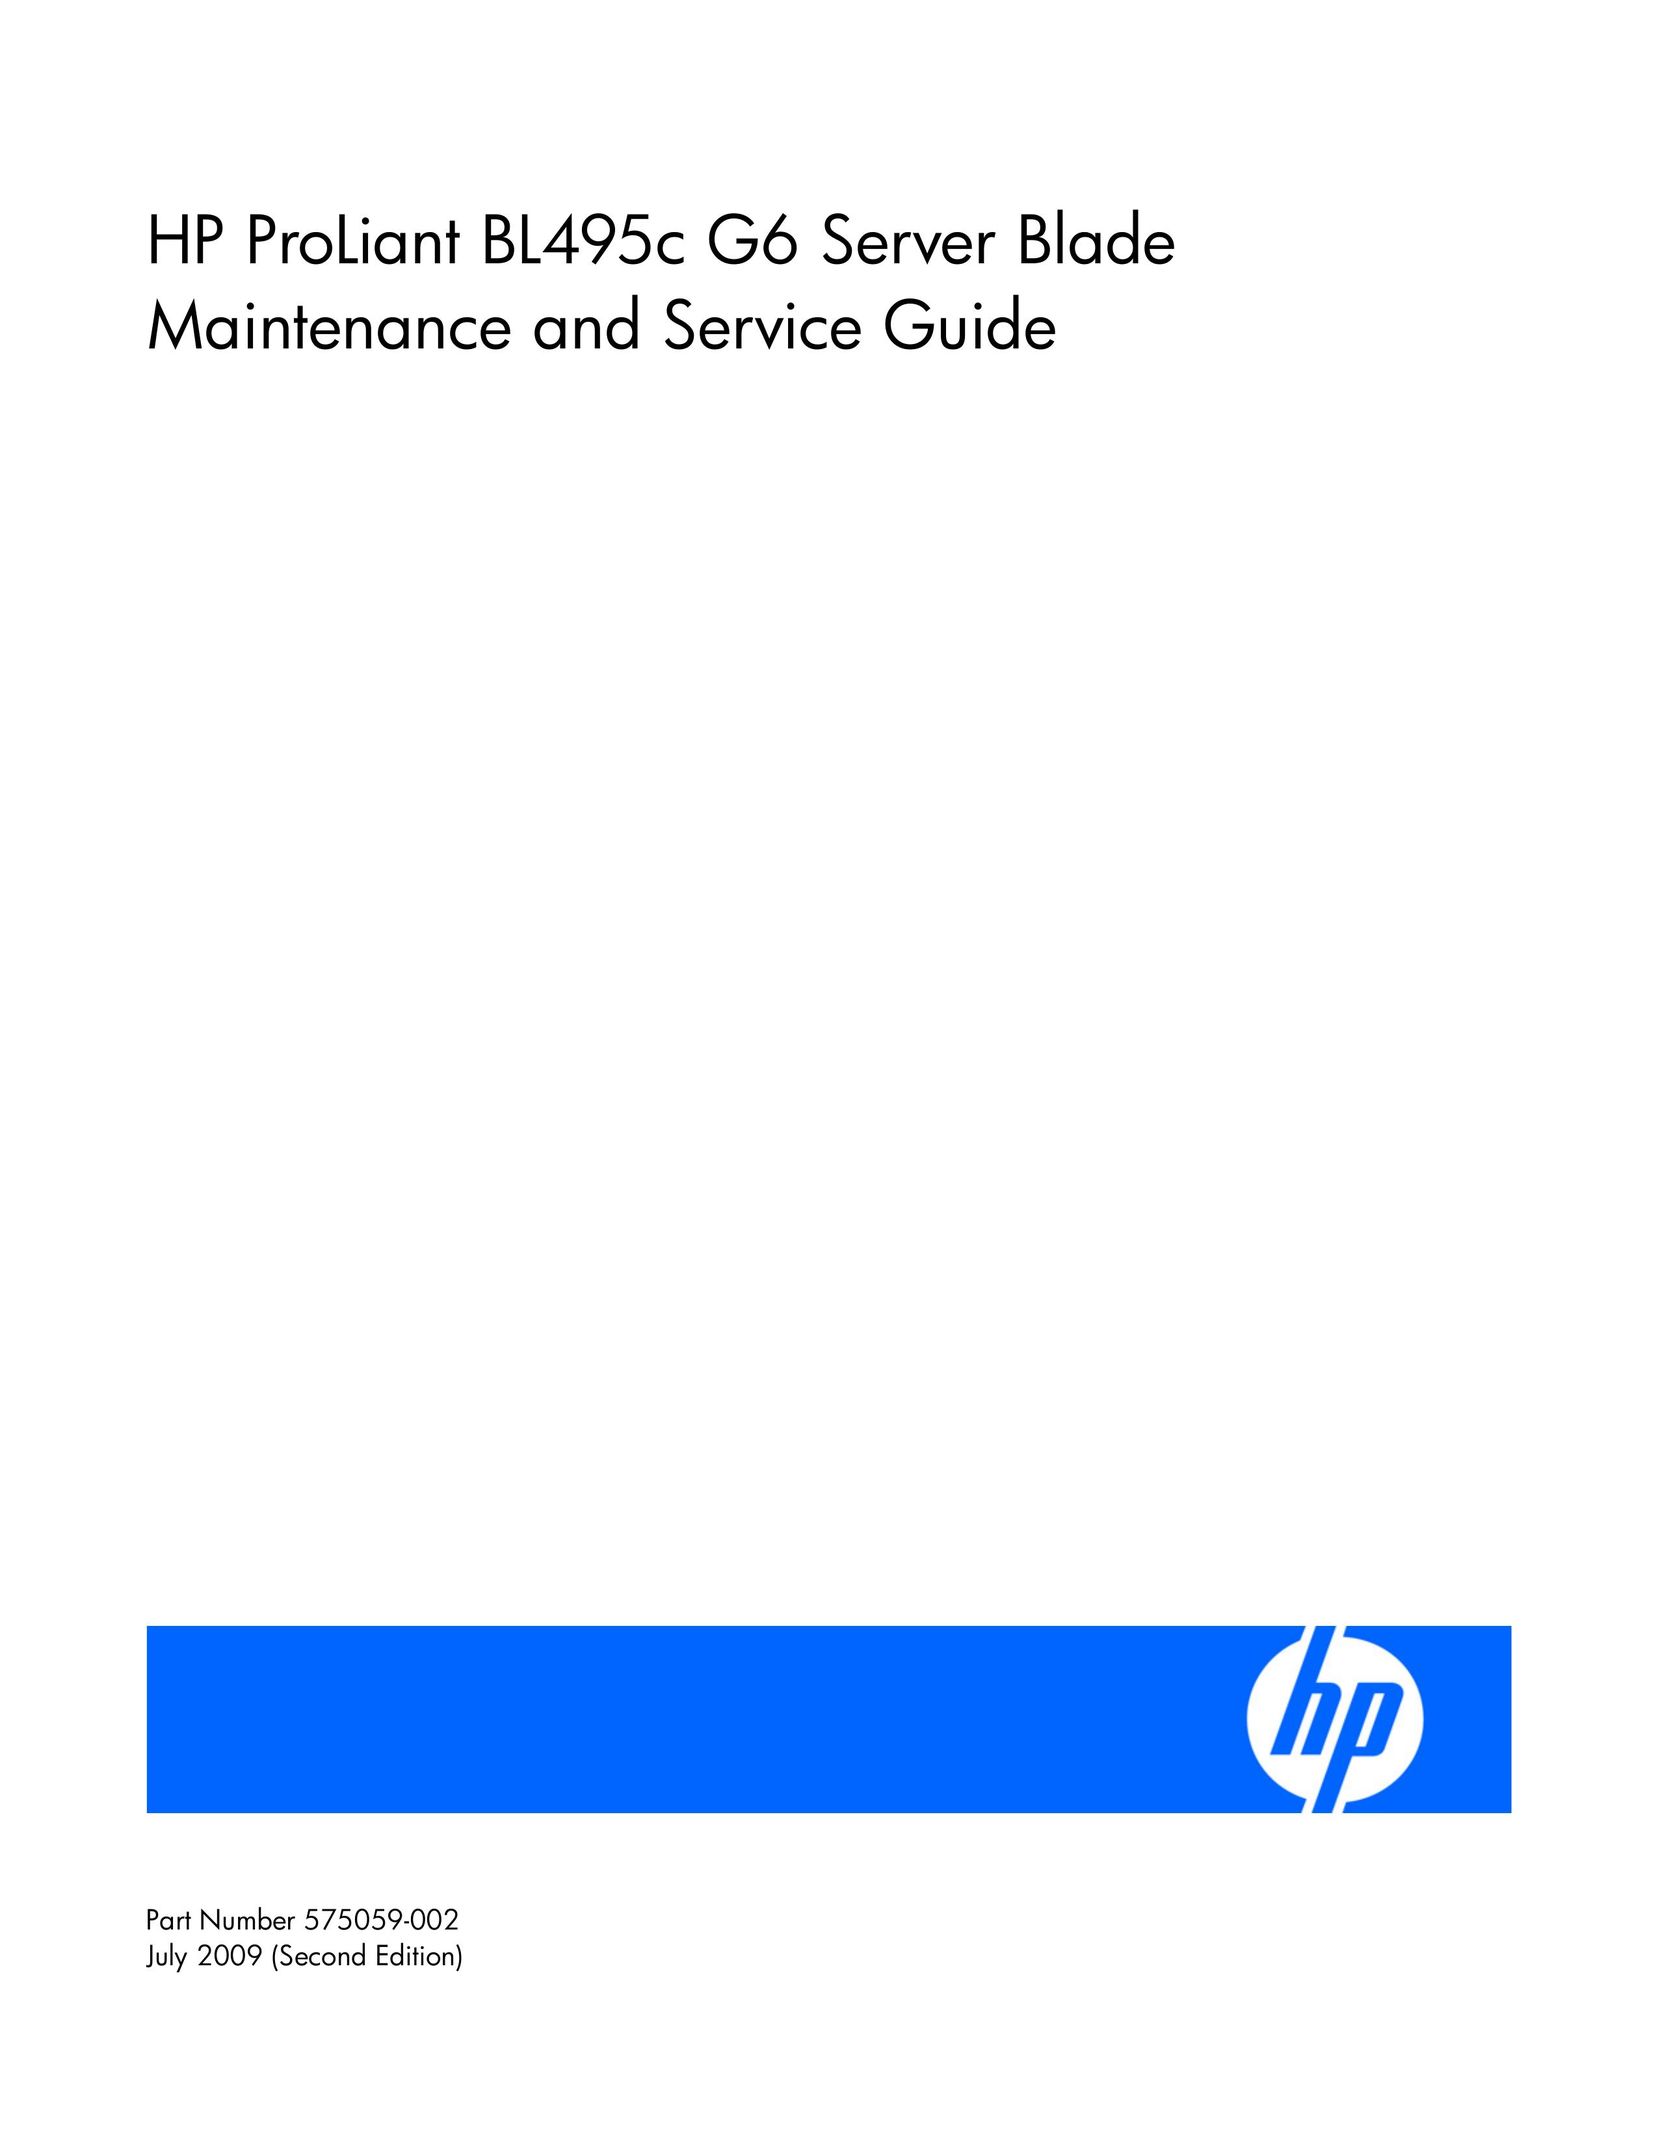 HP (Hewlett-Packard) ProLiant BL495c G6 Computer Accessories User Manual